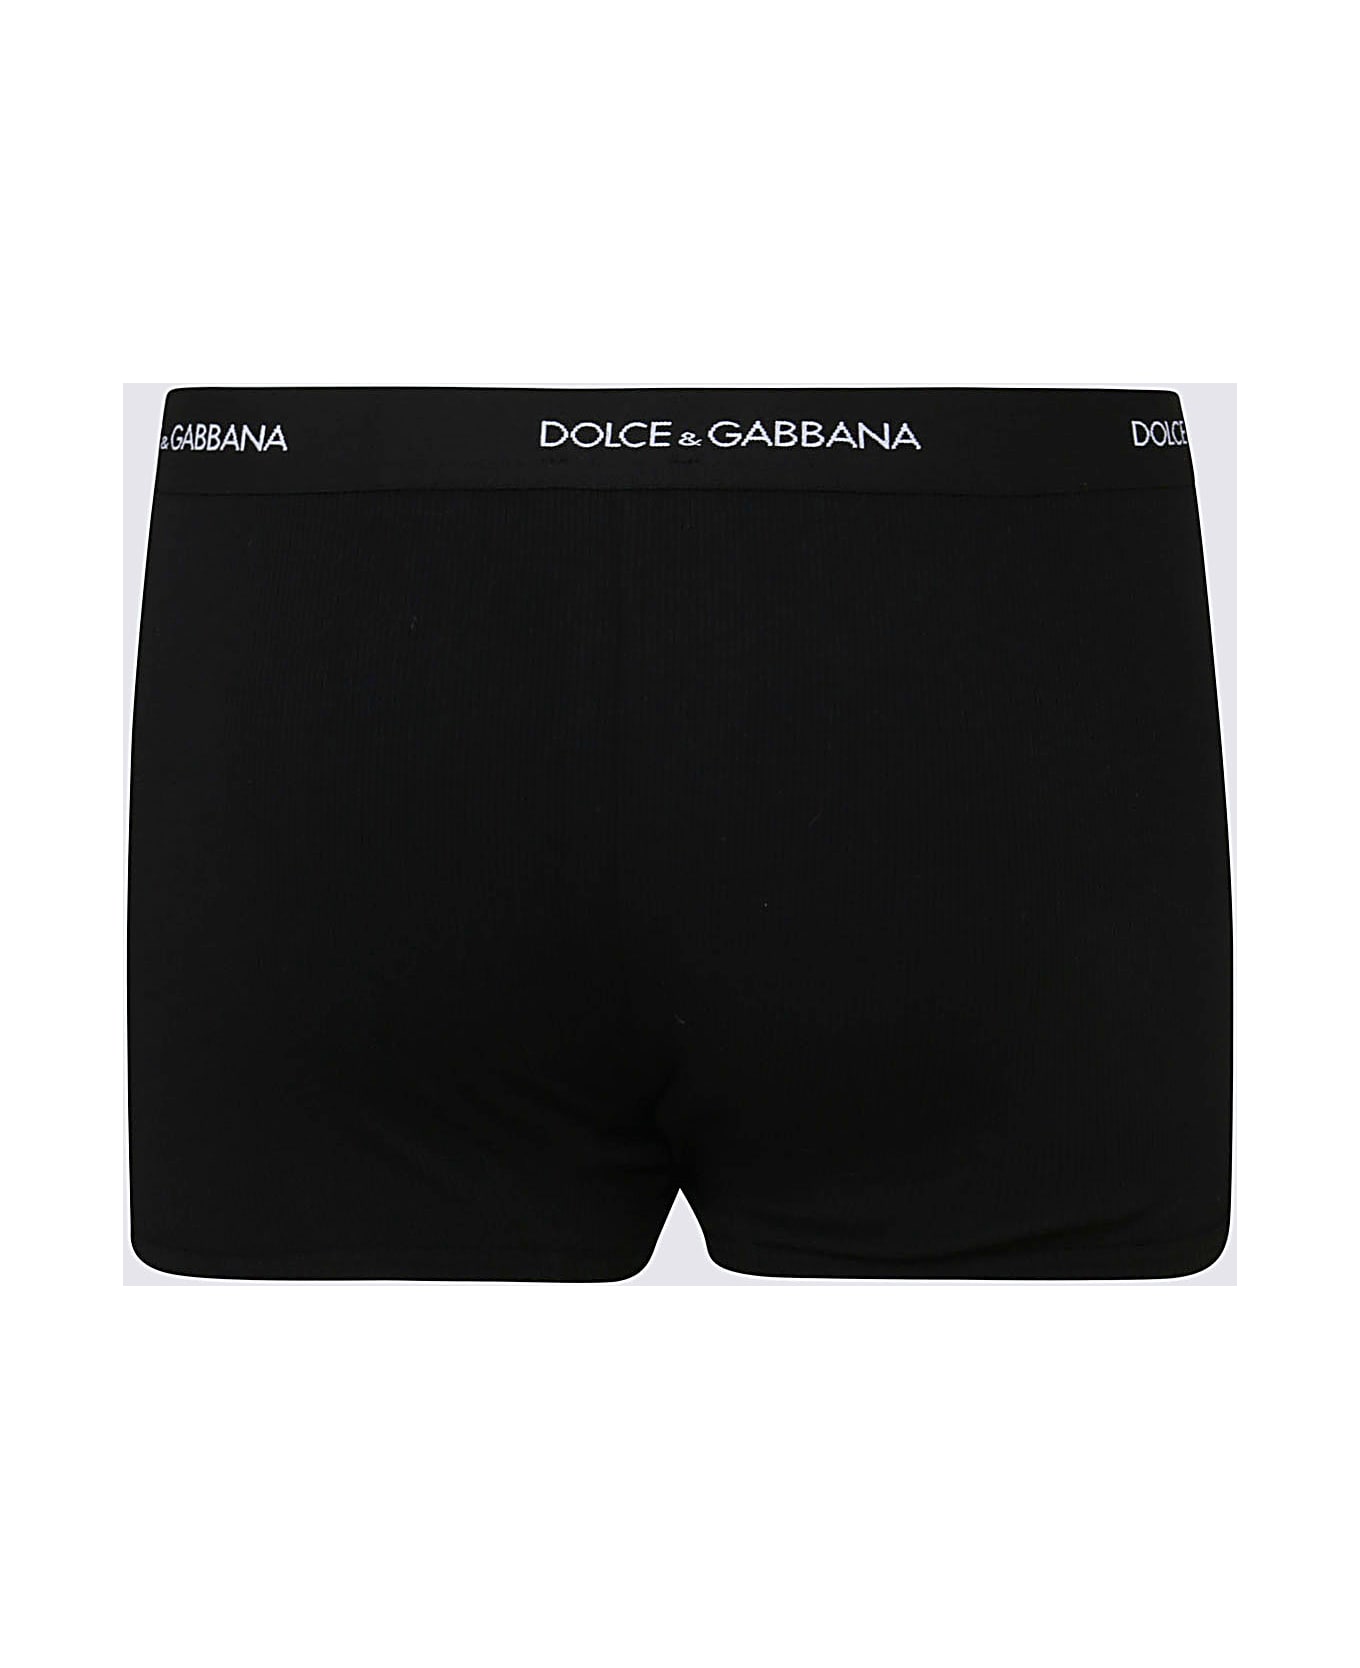 Dolce & Gabbana Black Cotton Boxers - NERO ショーツ